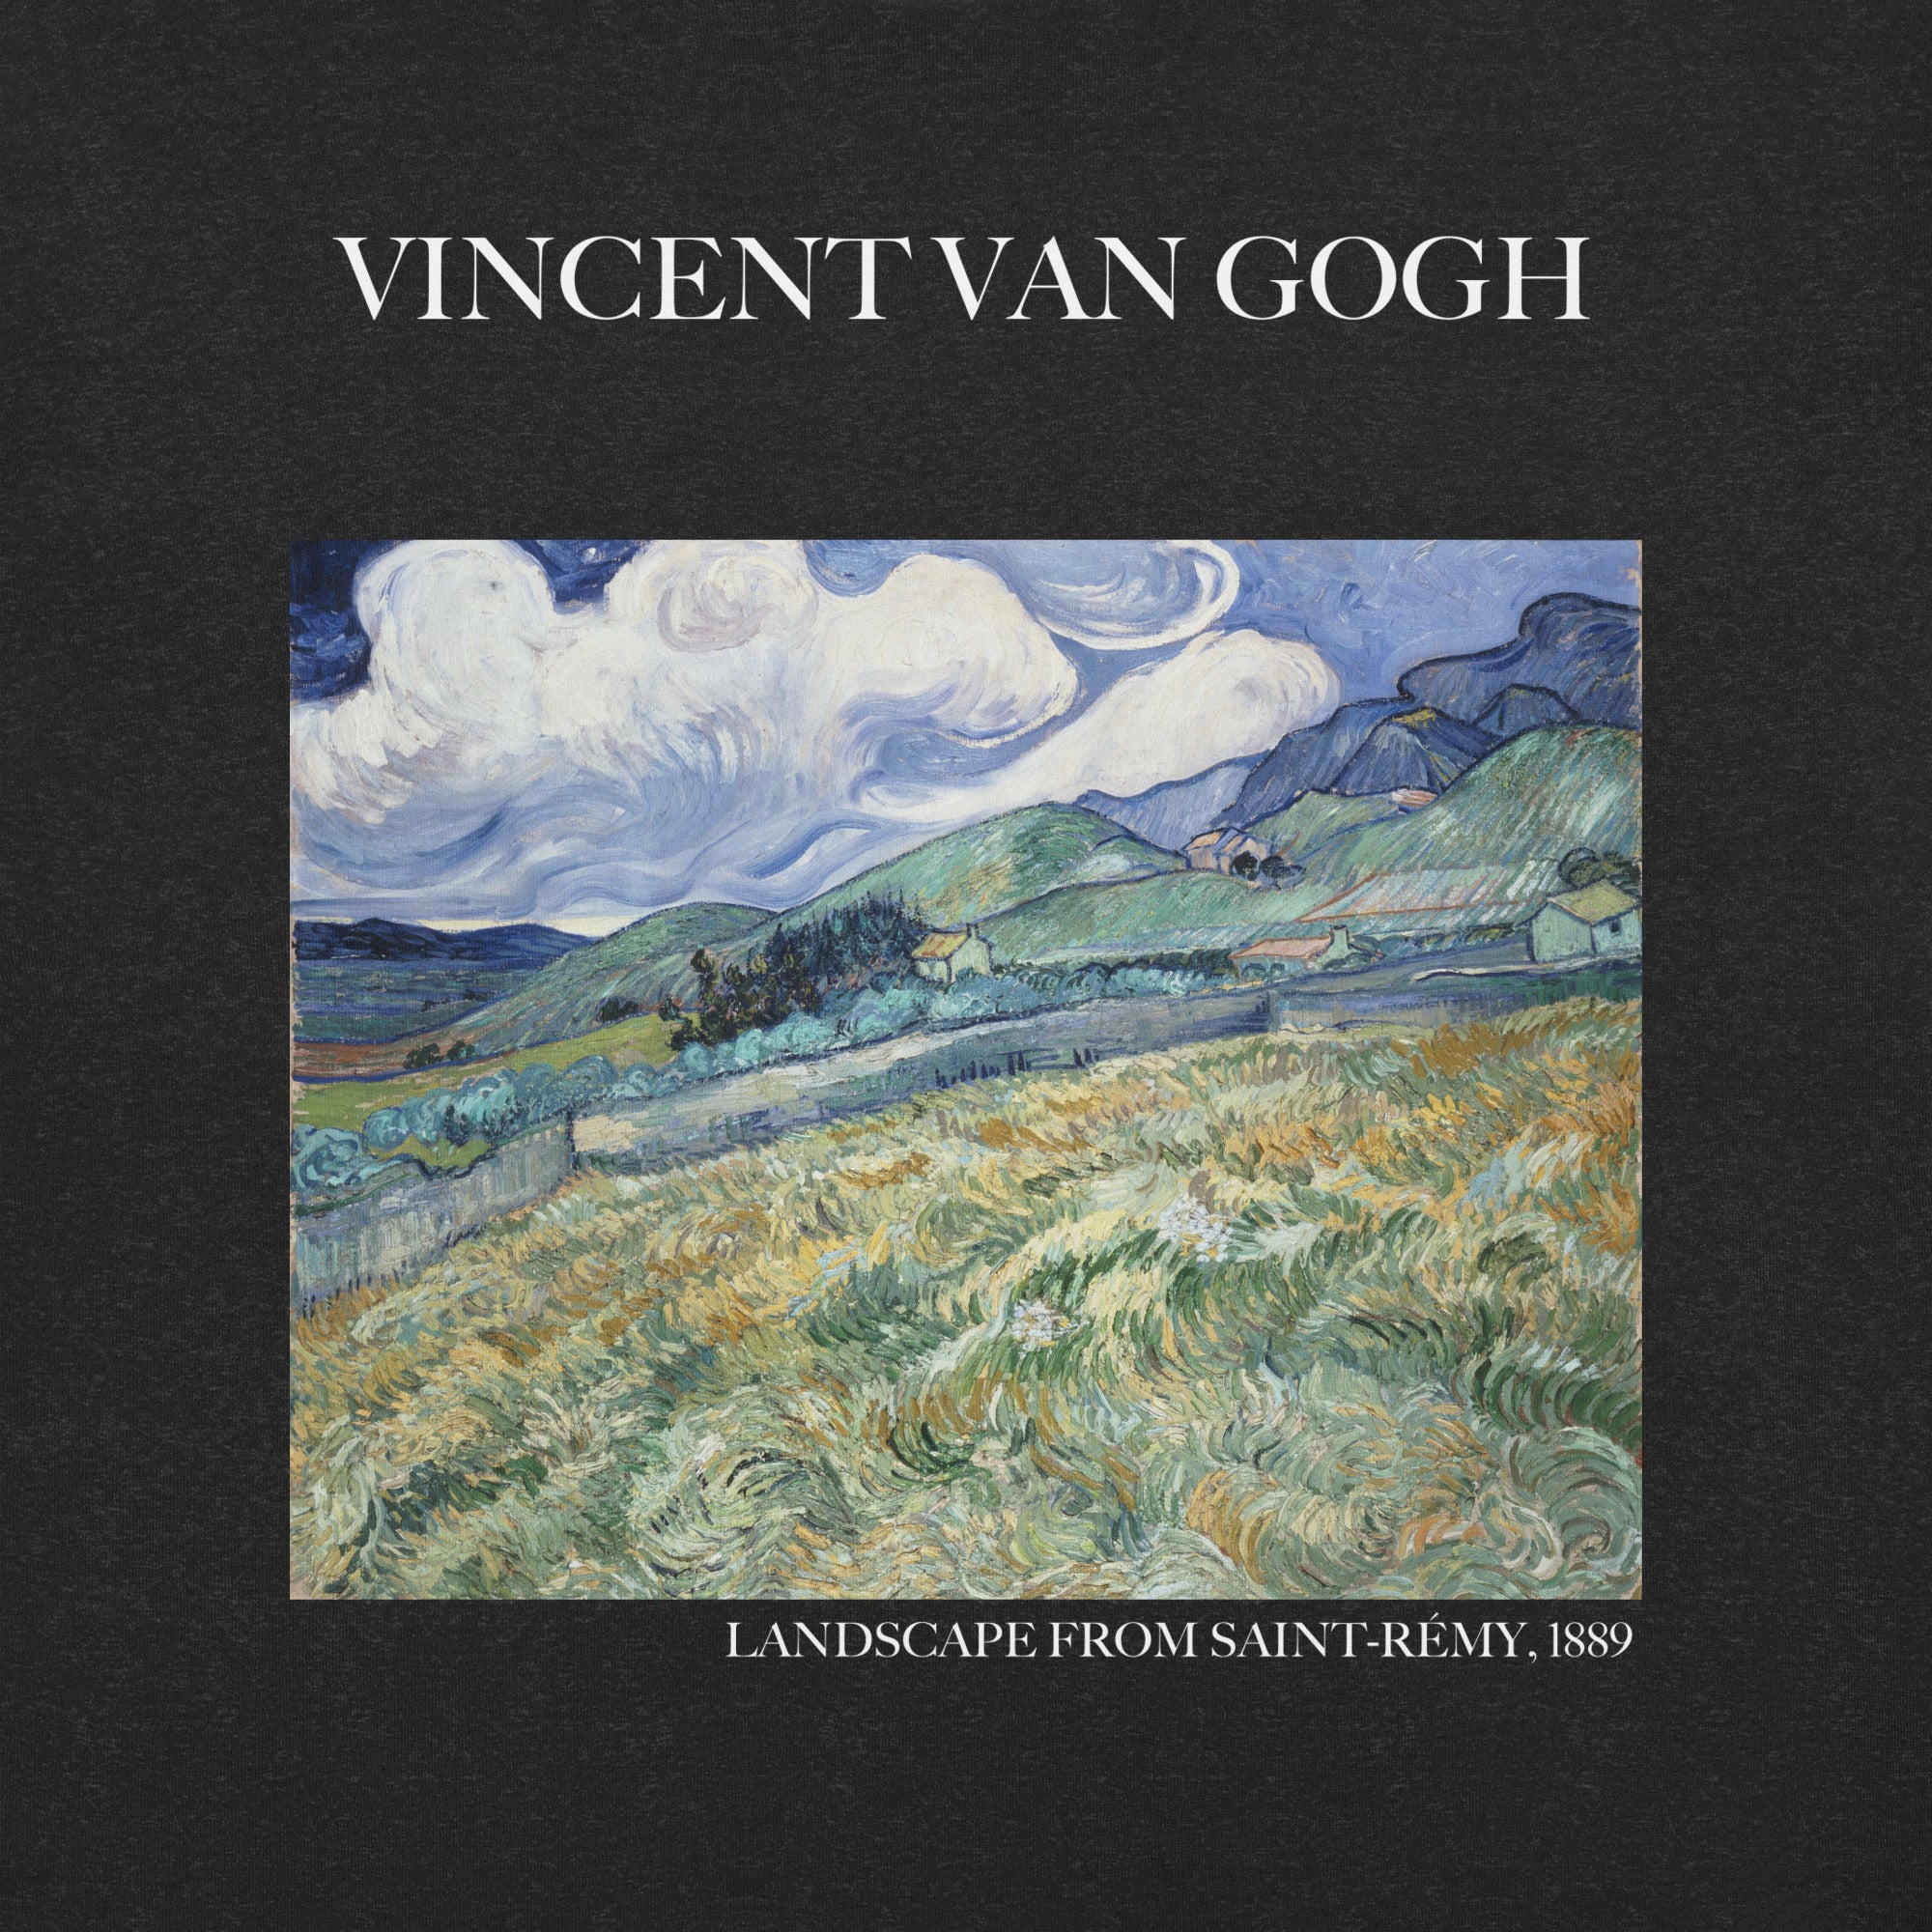 Vincent van Gogh 'Landscape from Saint-Rémy' Famous Painting T-Shirt | Unisex Classic Art Tee